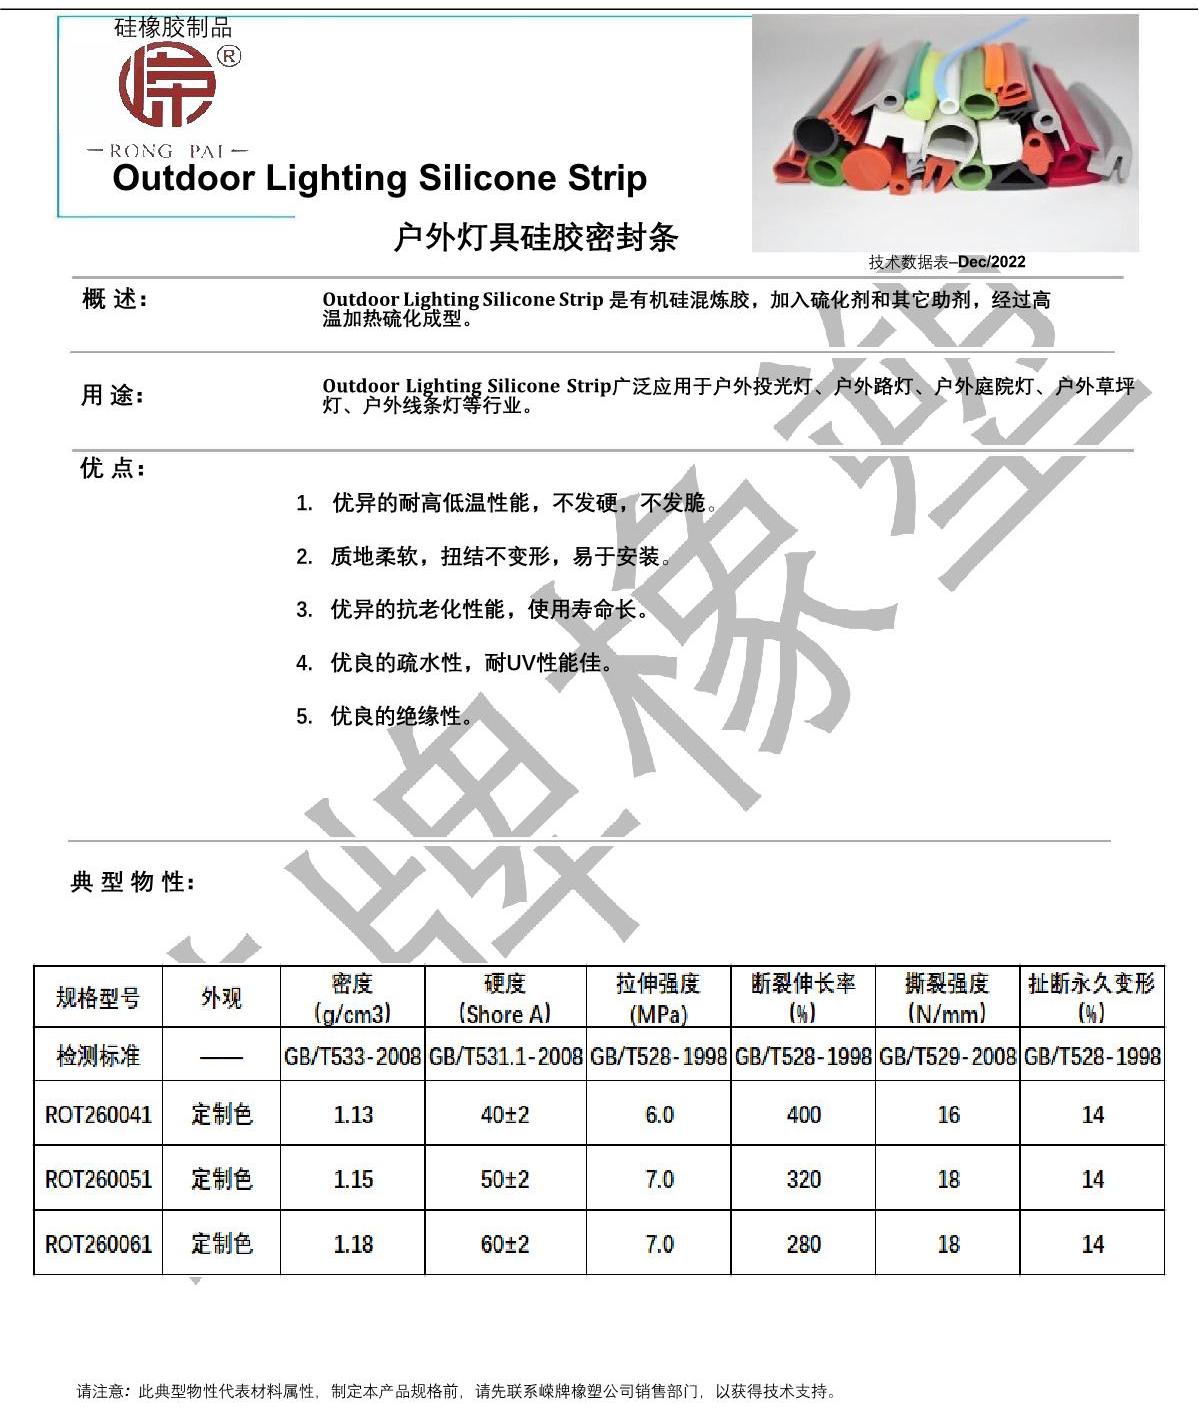 戶外燈具硅膠條產品說明_1.JPG